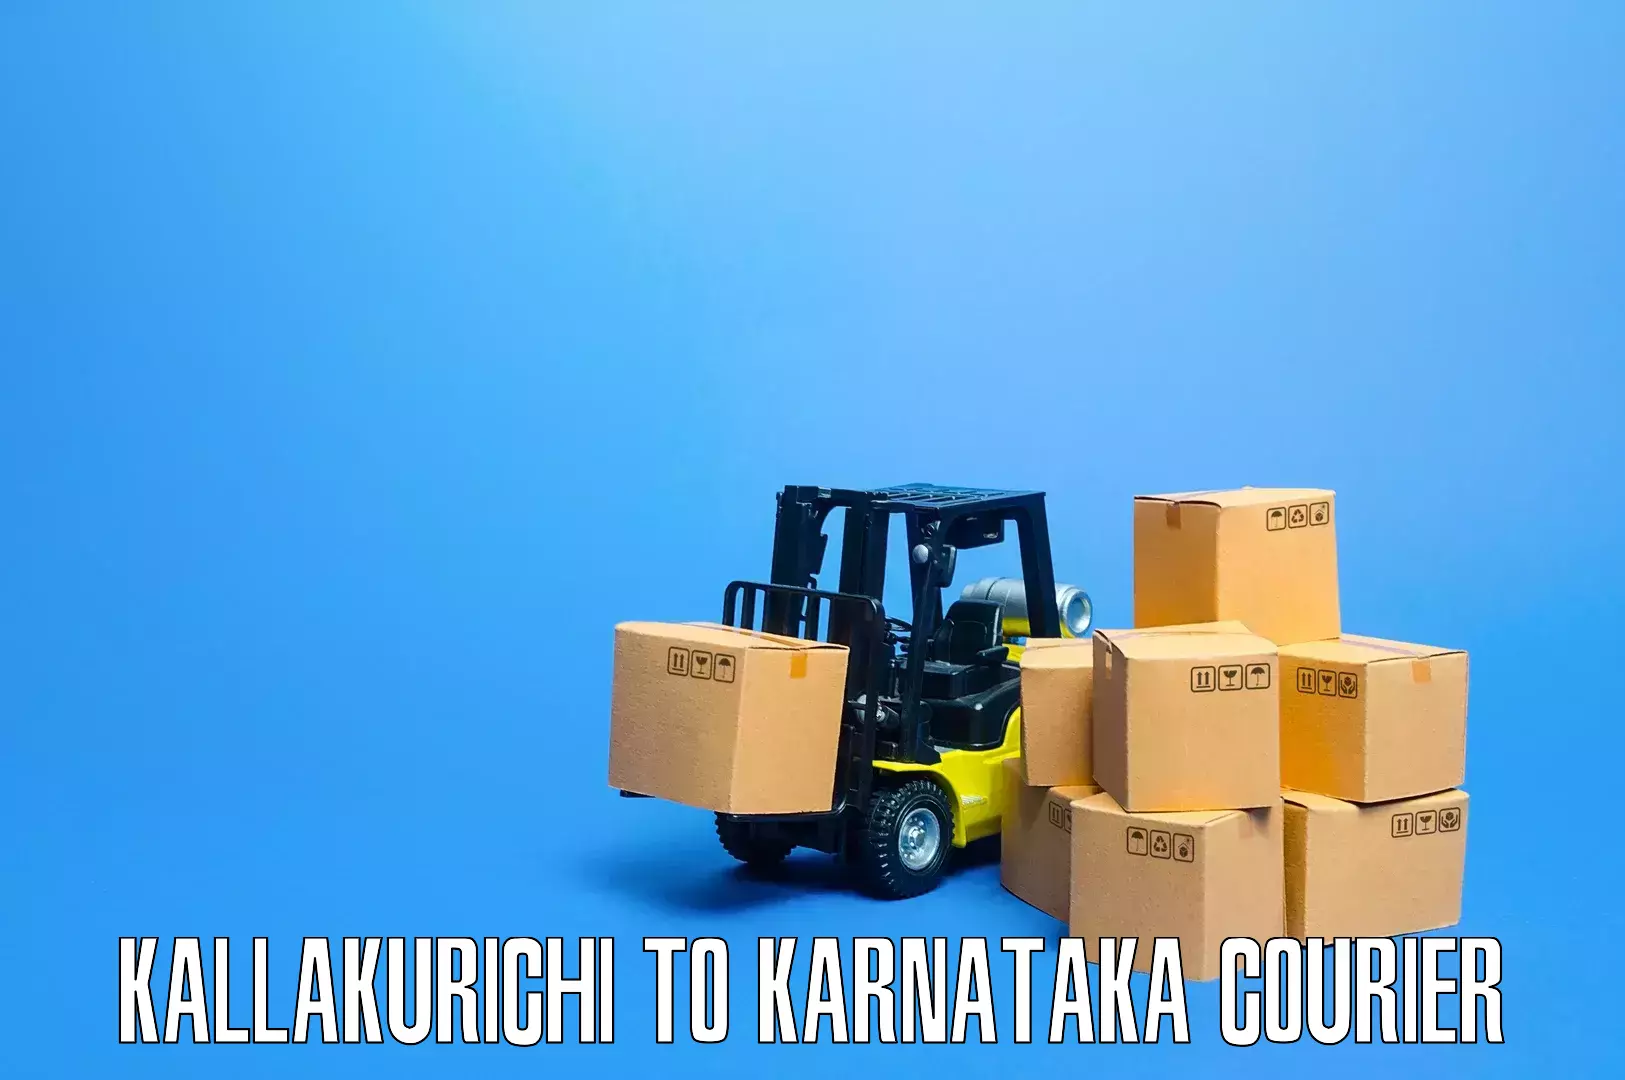 Trusted furniture transport Kallakurichi to Malur